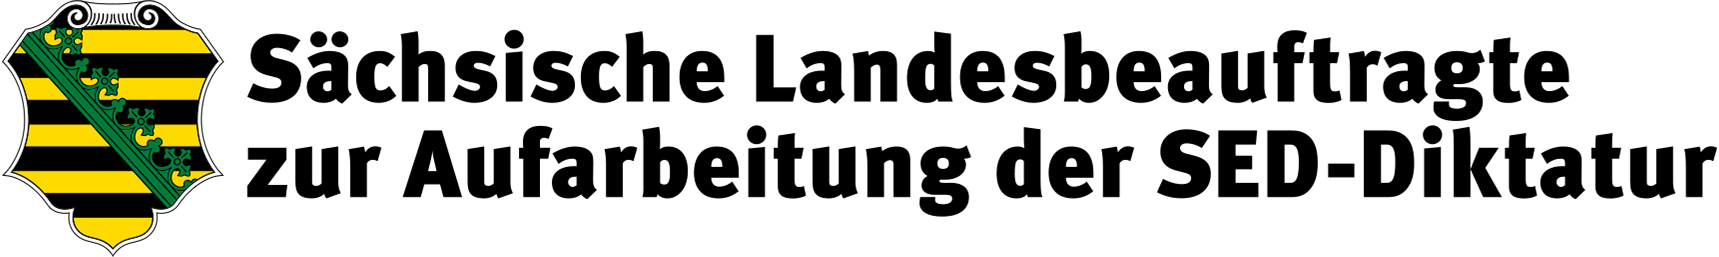 Logo Sächsischer Landesbeauftragter zur Aufarbeitung der SED-Diktatur